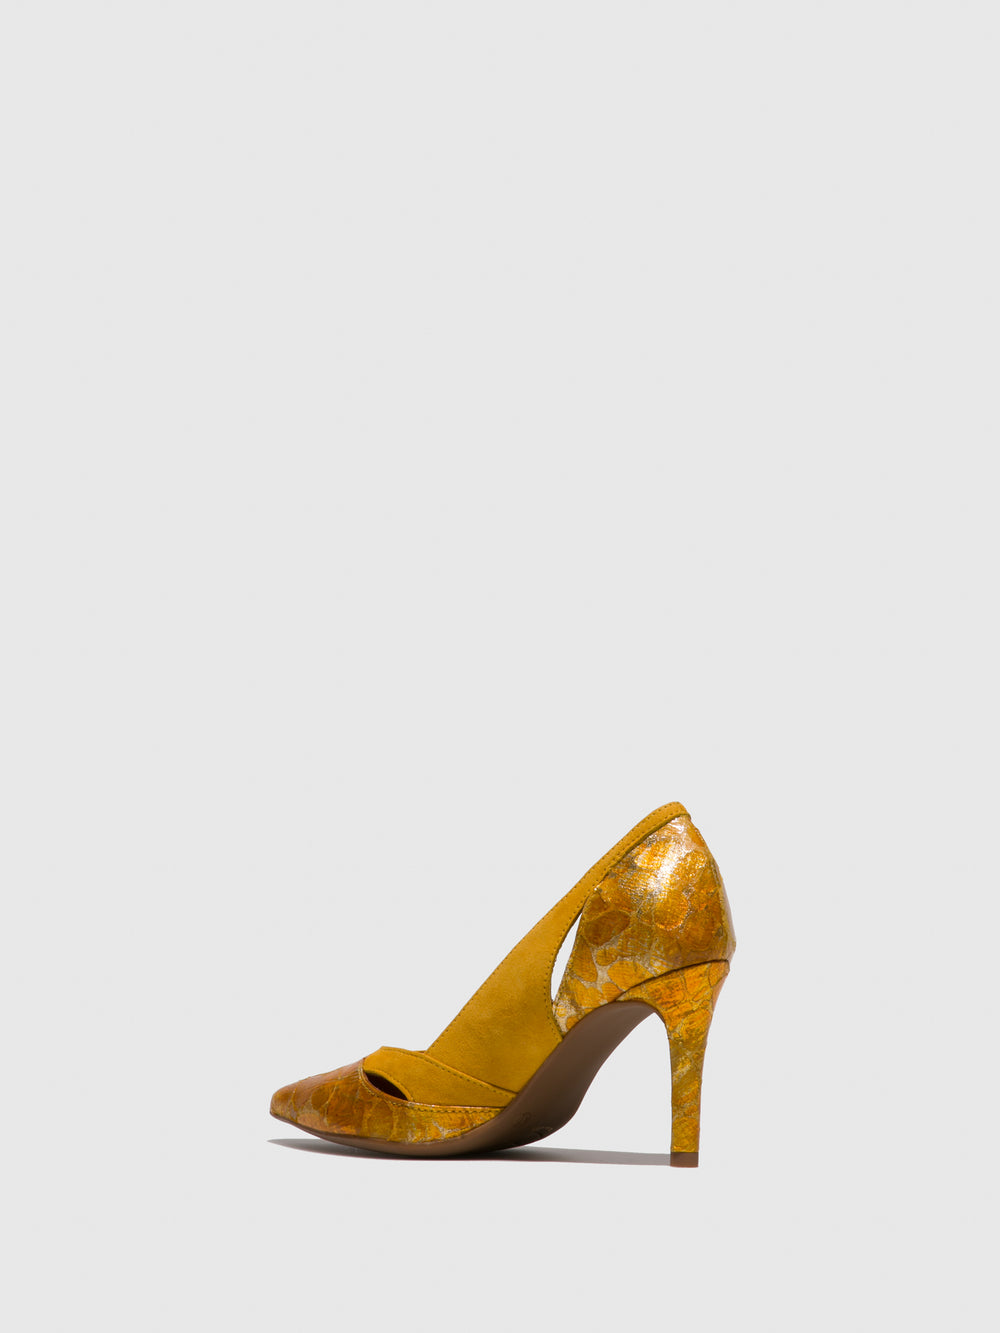 Sapatos Stilettos em Amarelo